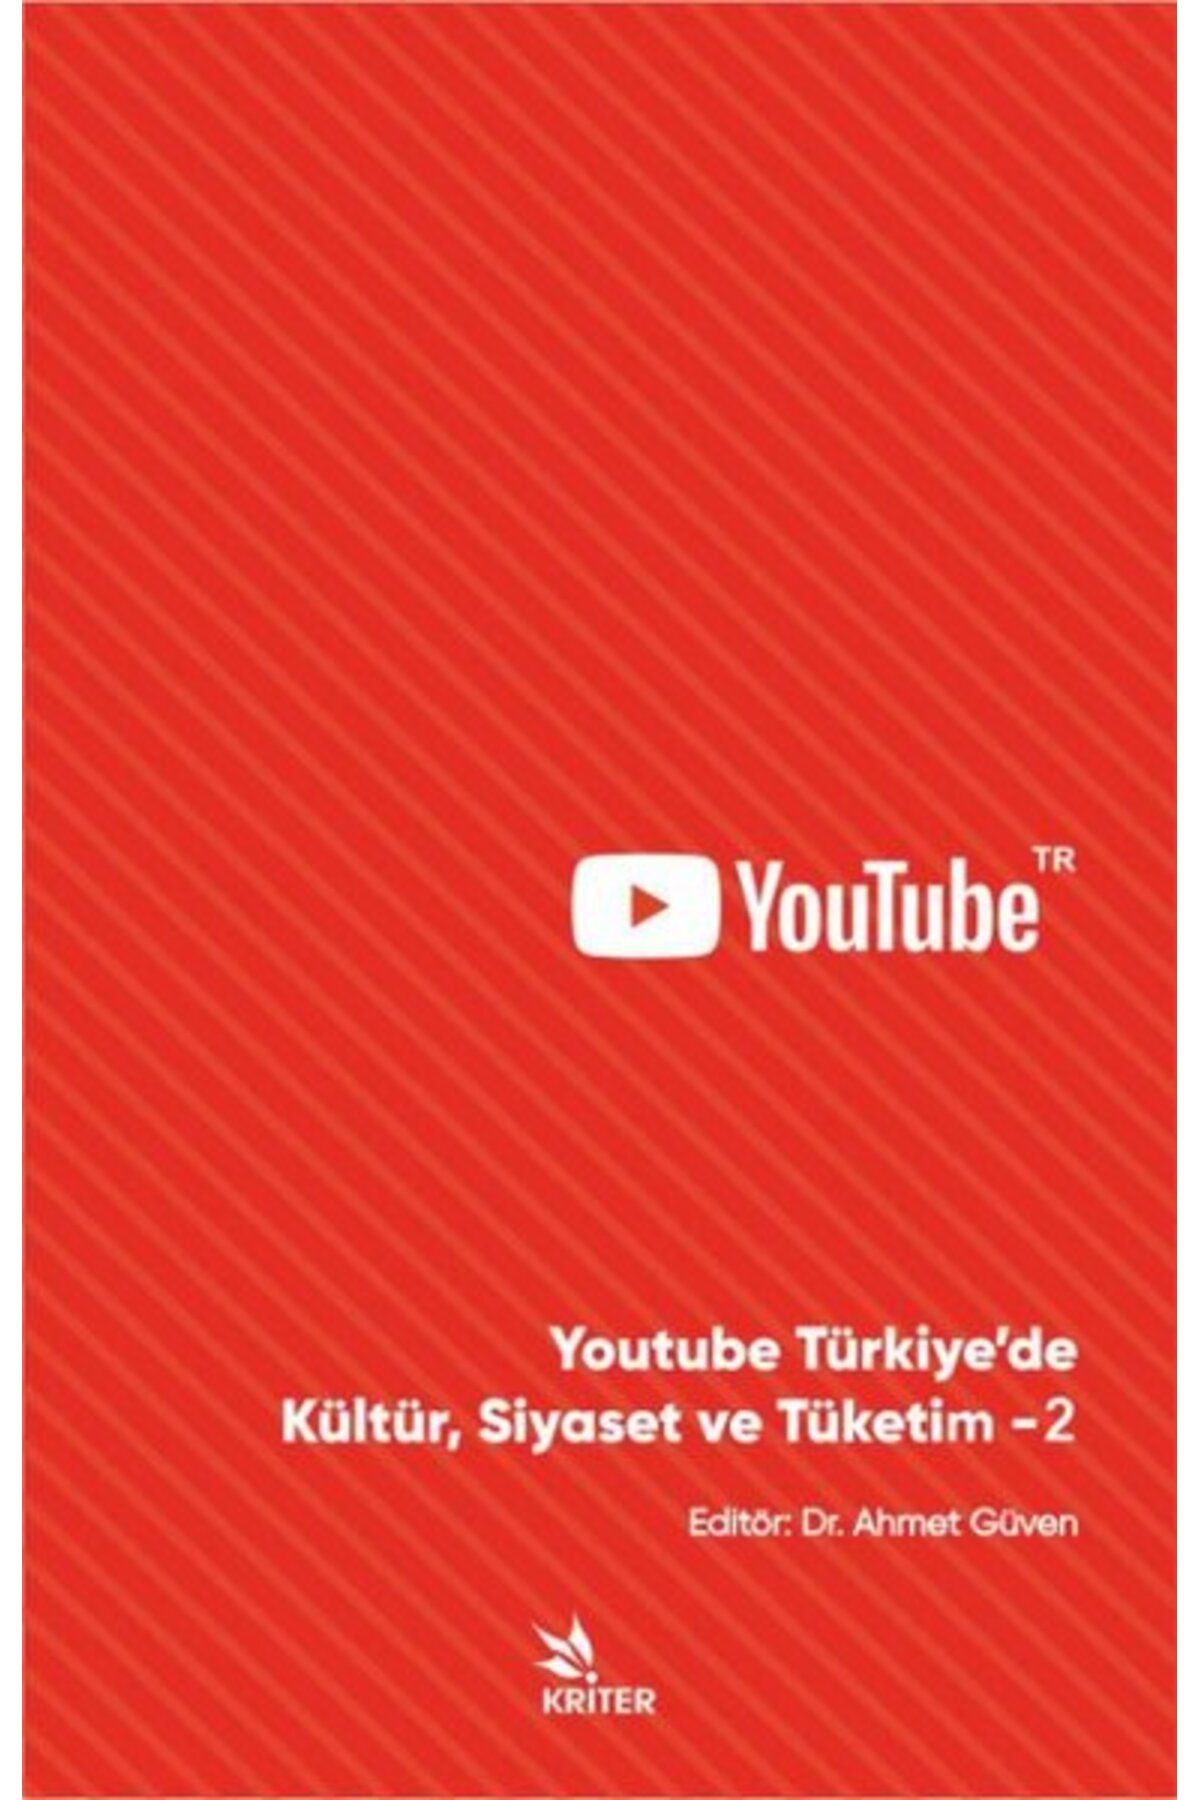 Kriter Youtube Türkiye'de Kültür Siyaset ve Tüketim 2